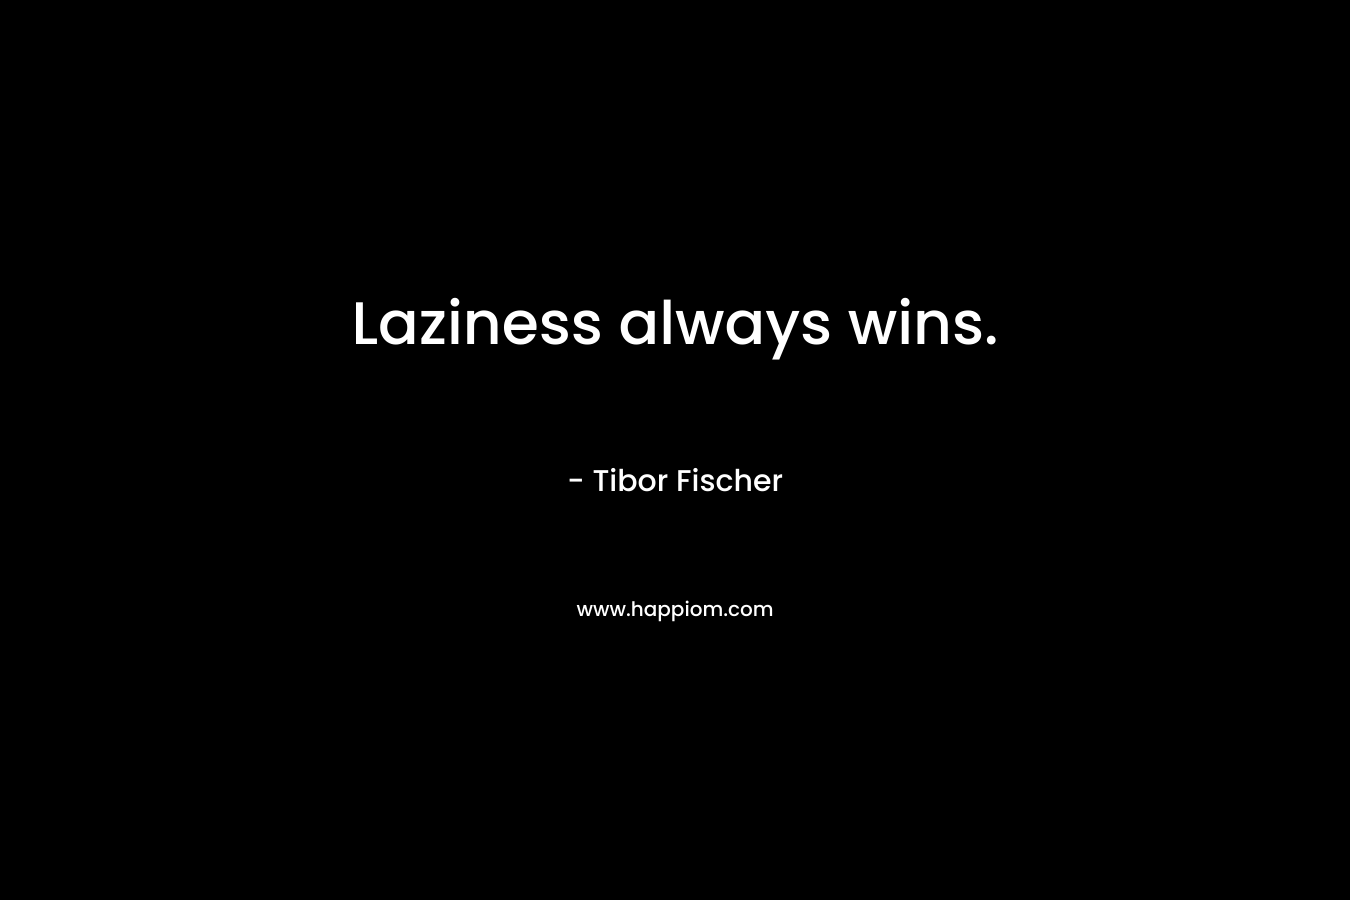 Laziness always wins.